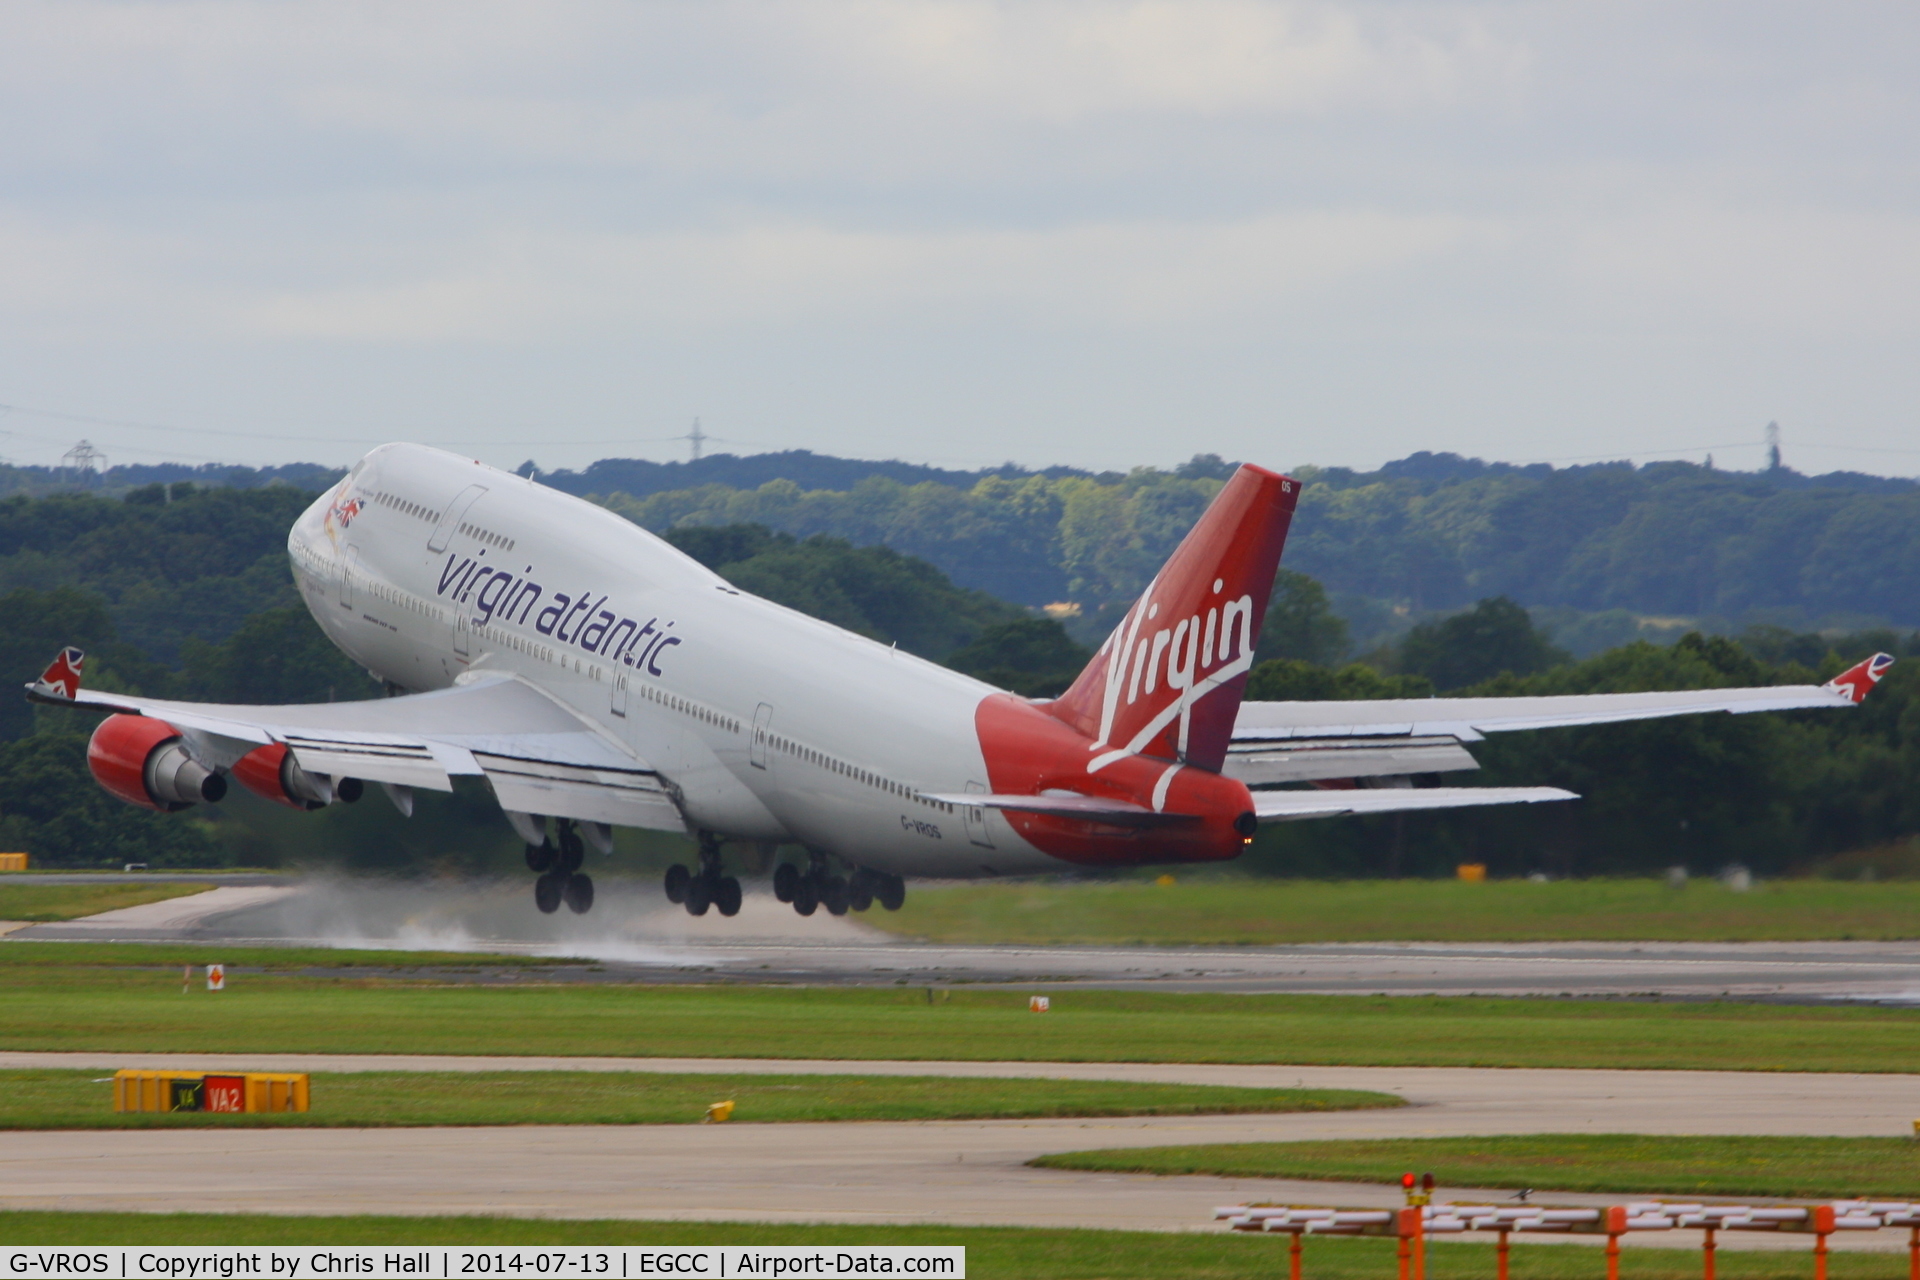 G-VROS, 2001 Boeing 747-443 C/N 30885, Virgin Atlantic